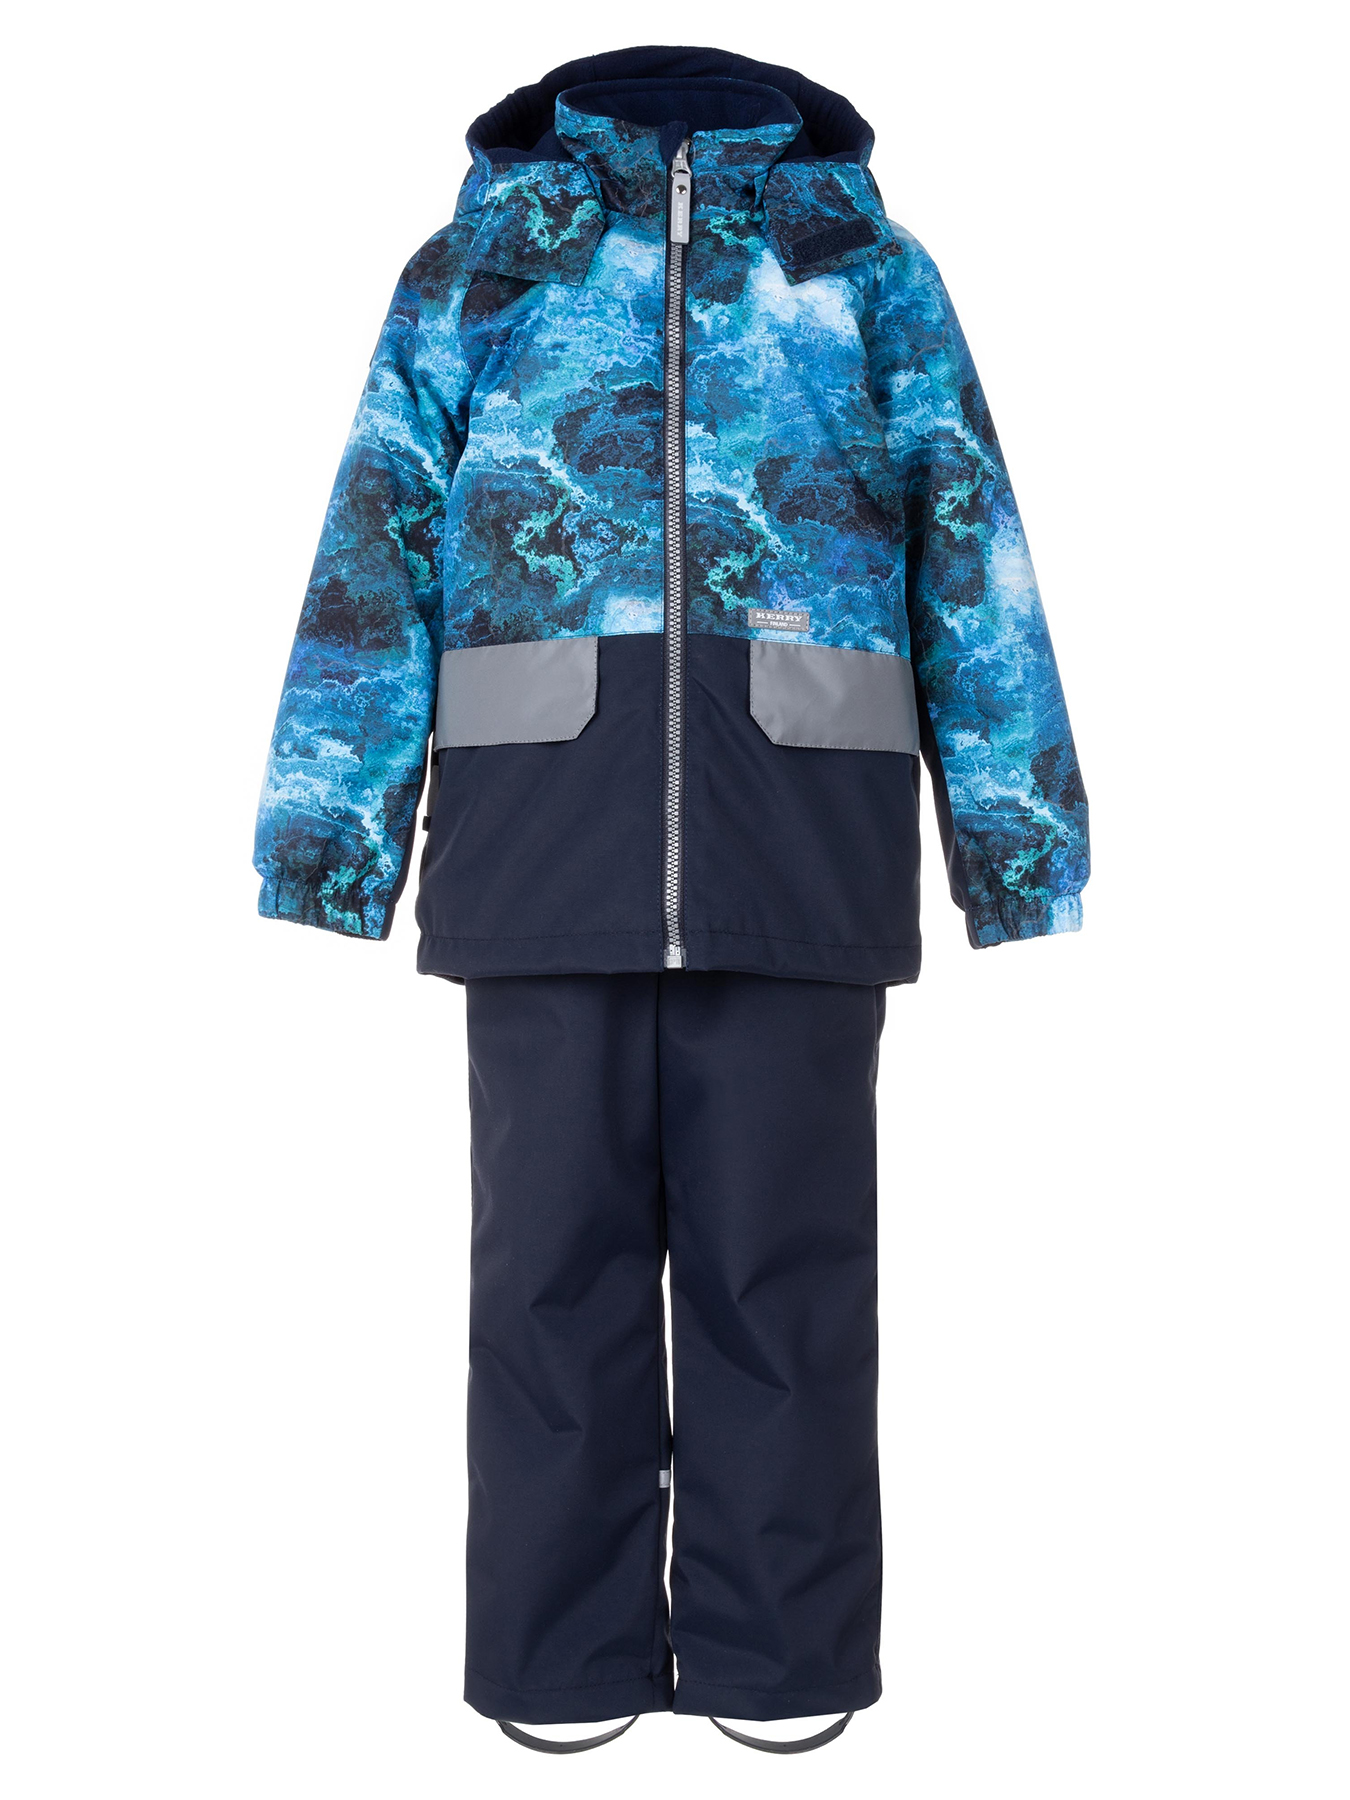 Комплект верхней одежды KERRY TOMI K24030, 6310-синий с рисунком,темно-синий, 110